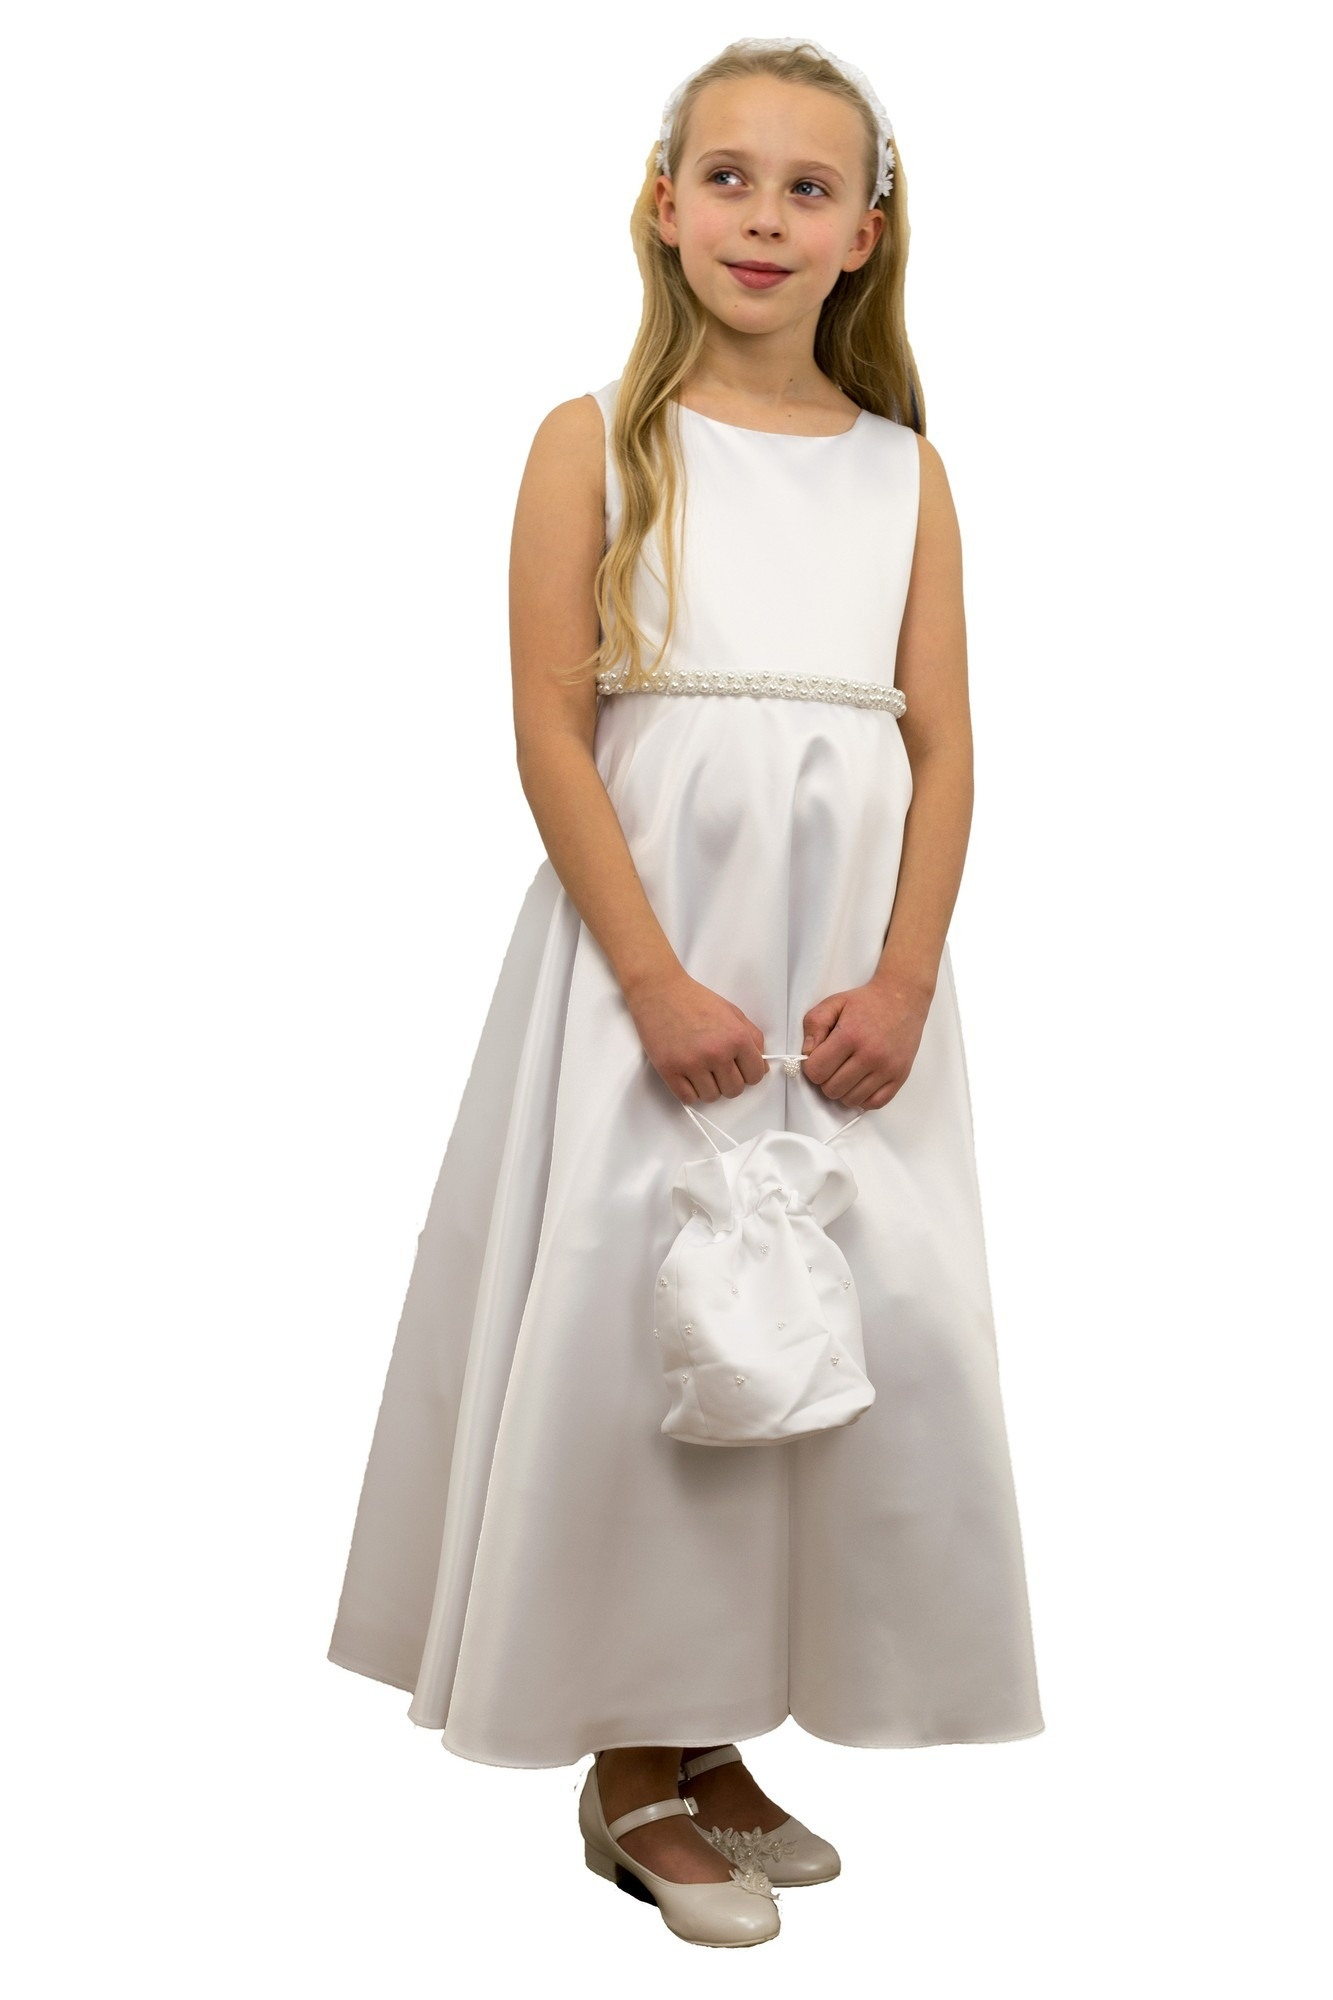 Designer Einfach Sommerkleid Weiß Lang VertriebAbend Schön Sommerkleid Weiß Lang Spezialgebiet